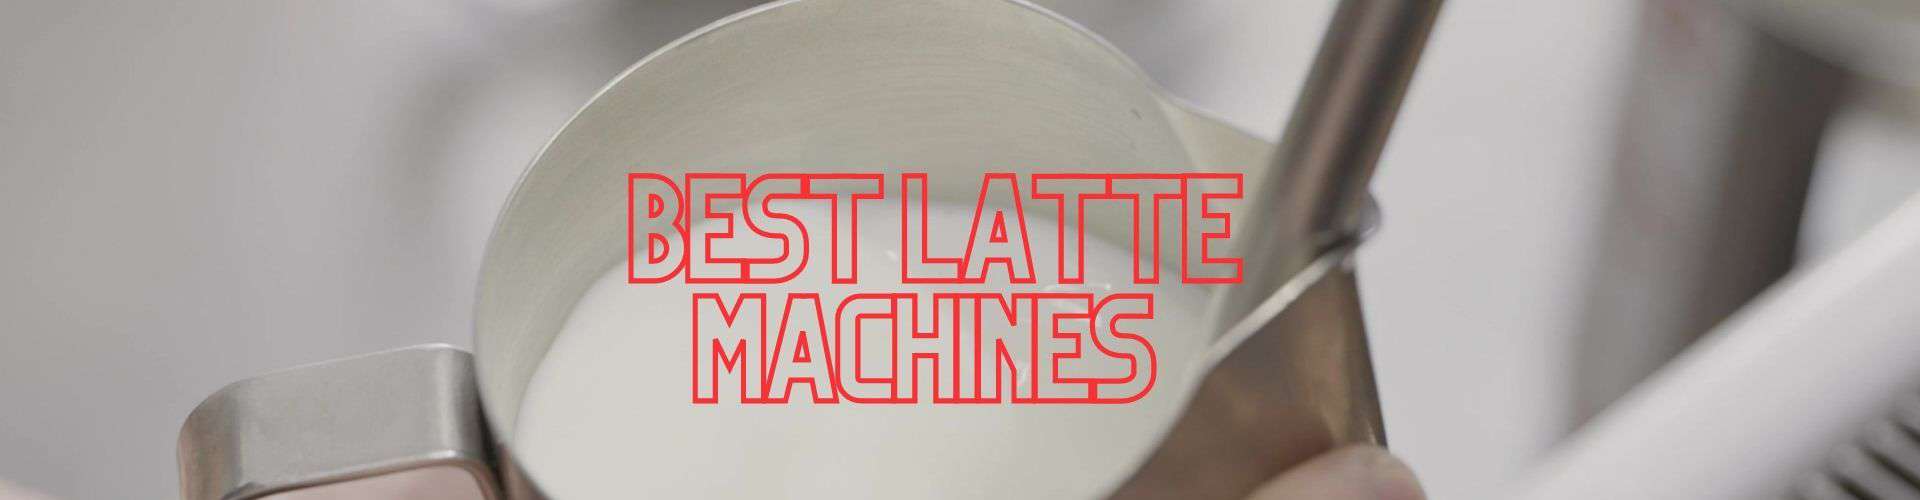 The Best Latte Machine -Does Your Espresso Machine Steam Milk?